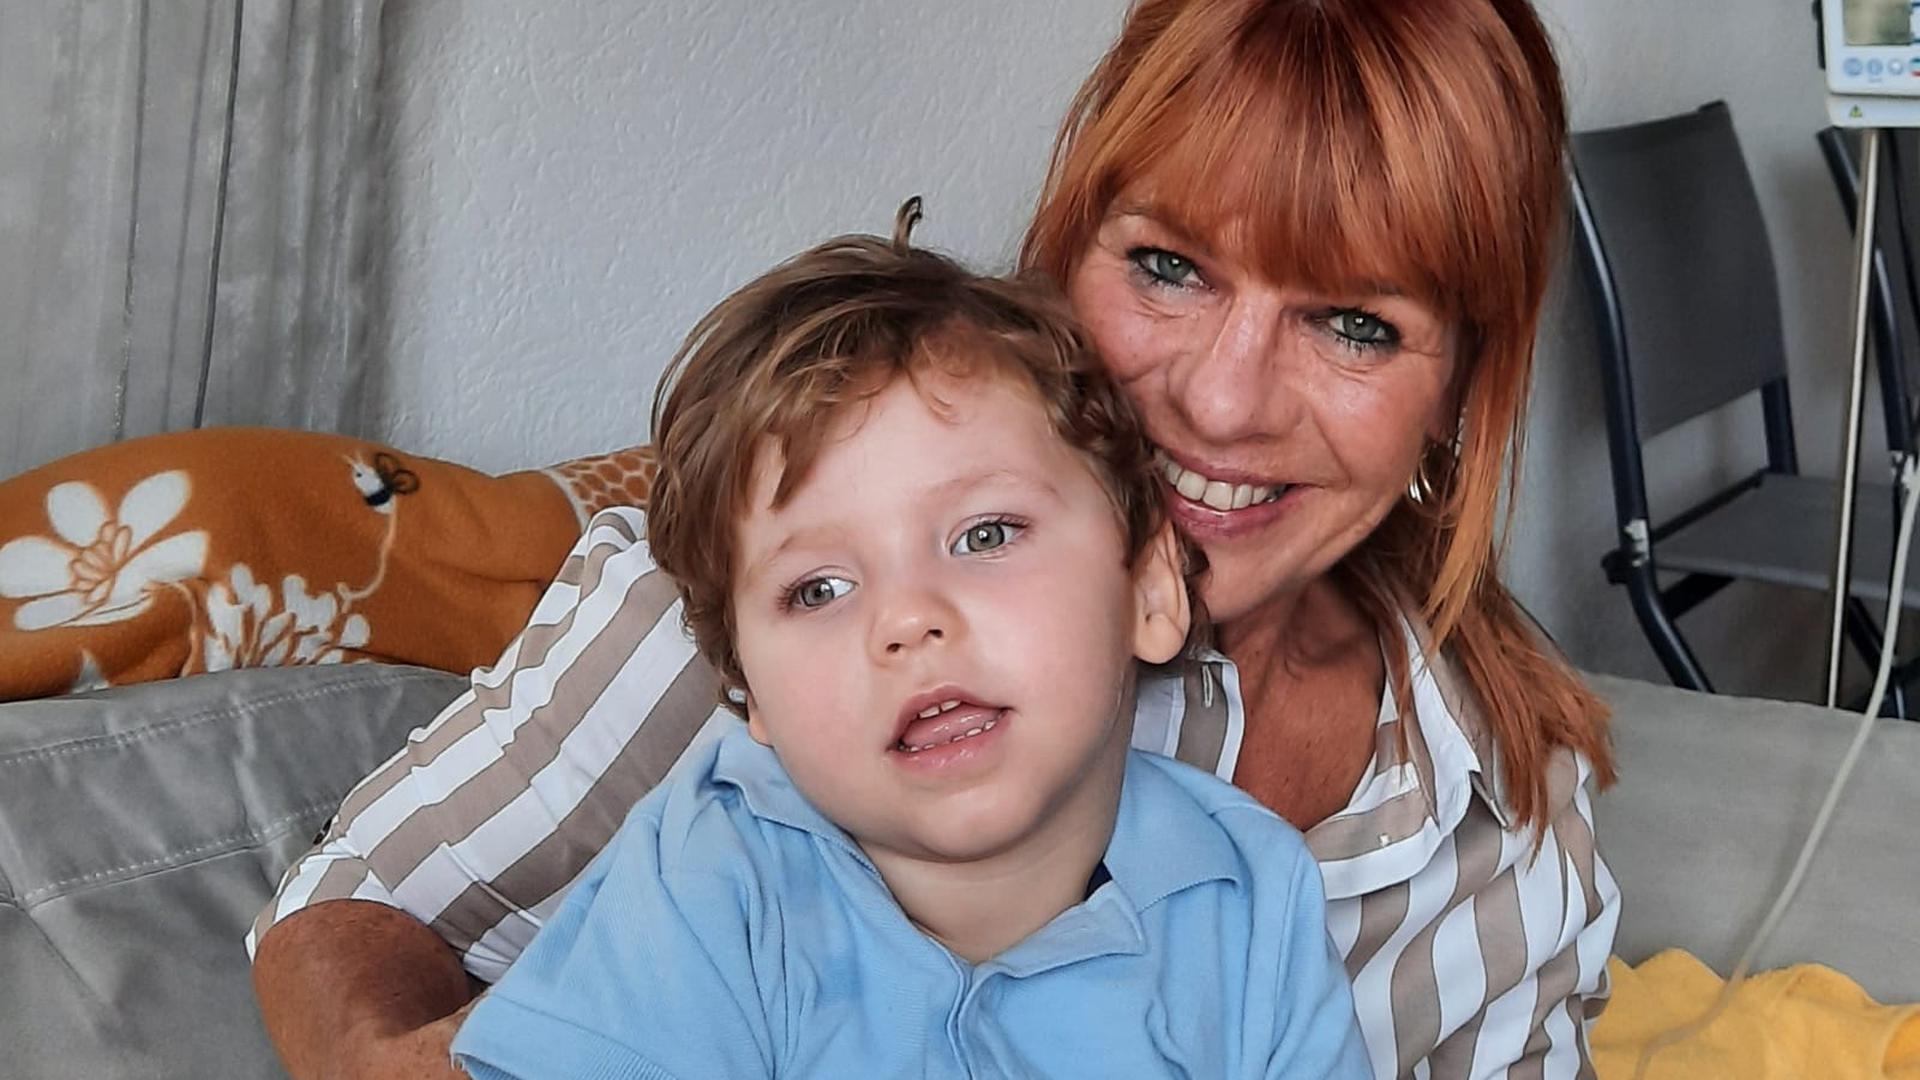 Glücklich über die Unterstützung: Marianne Thies mit ihrem Enkel Jonah. Großeltern und Eltern des Jungen kämpfen gemeinsam um dessen bestmöglichen Entwicklungschancen.